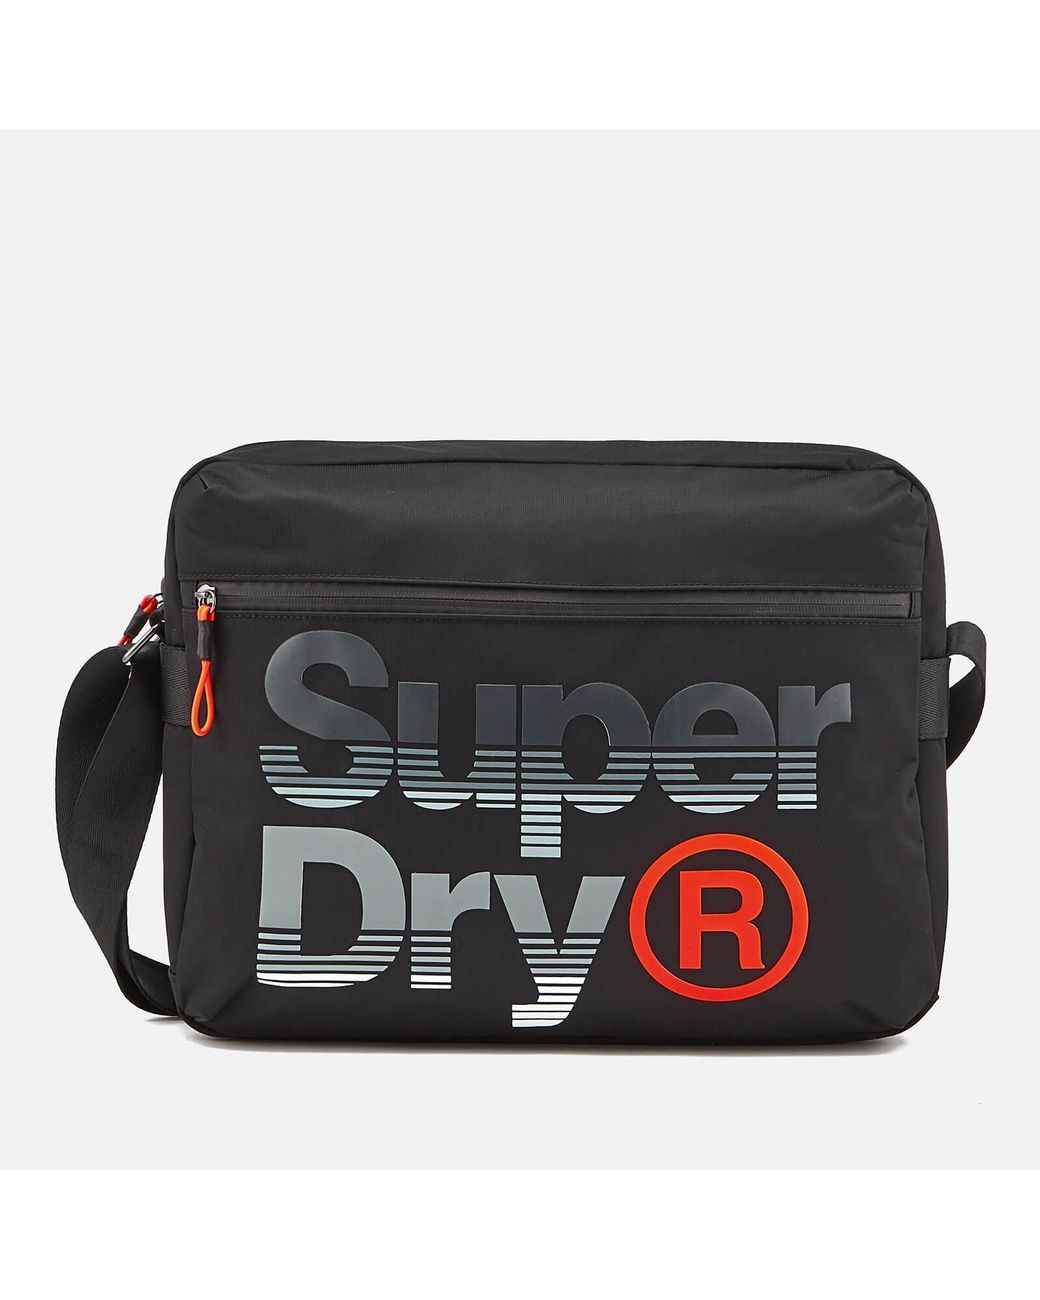 Superdry Expander Lineman Messenger Bag for Men | Lyst Canada